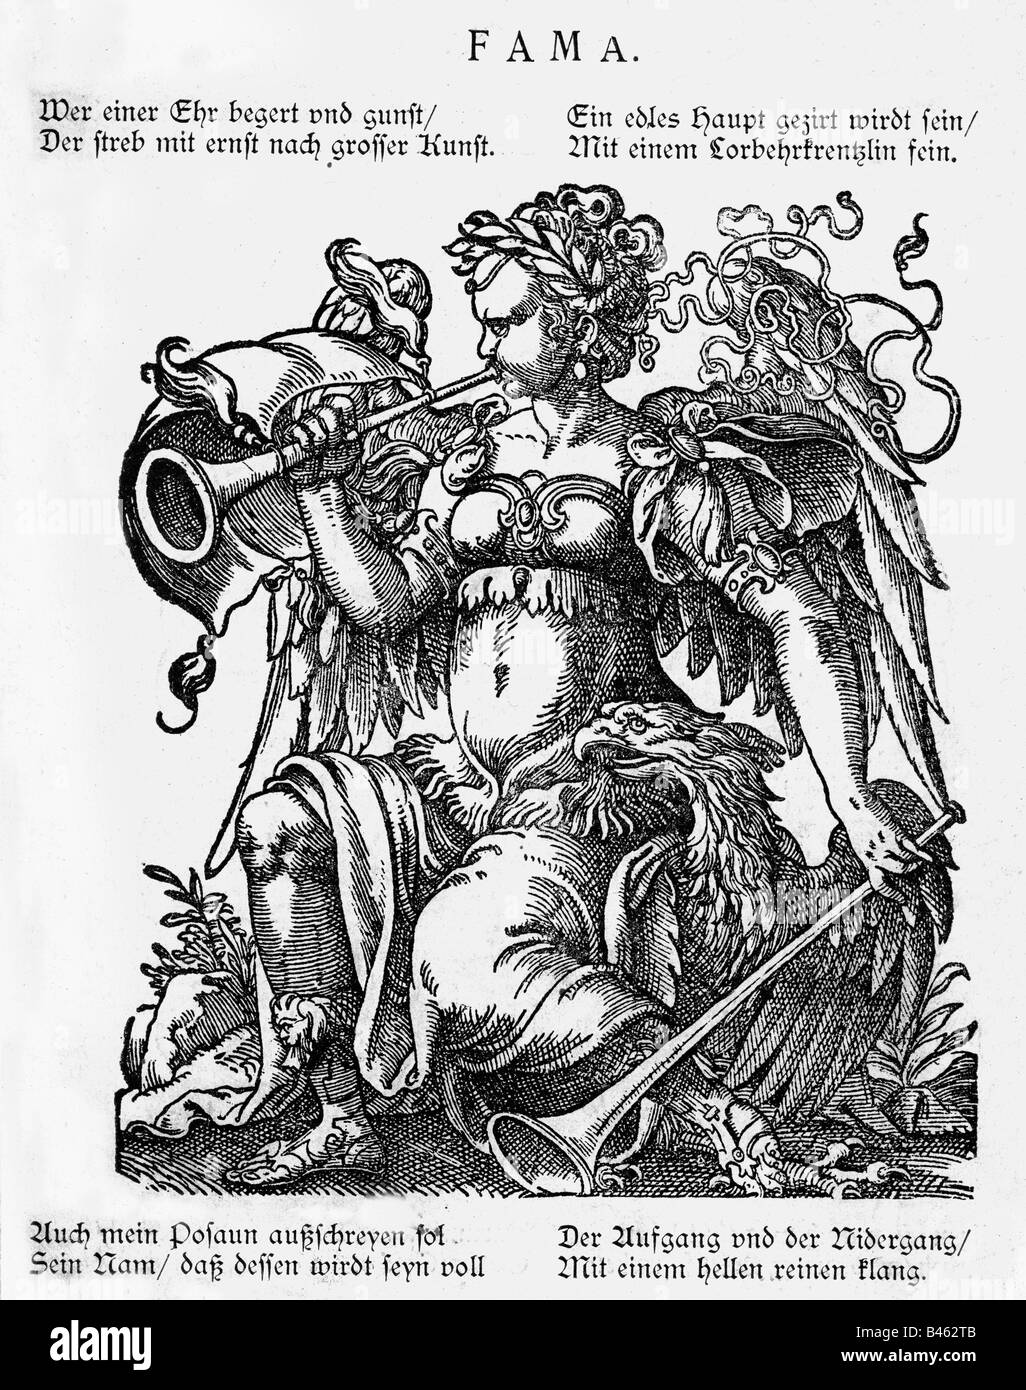 Allegorie, 'Rumor' (Fama), legno di Jost Amman, Francoforte sul meno, 1599, Foto Stock